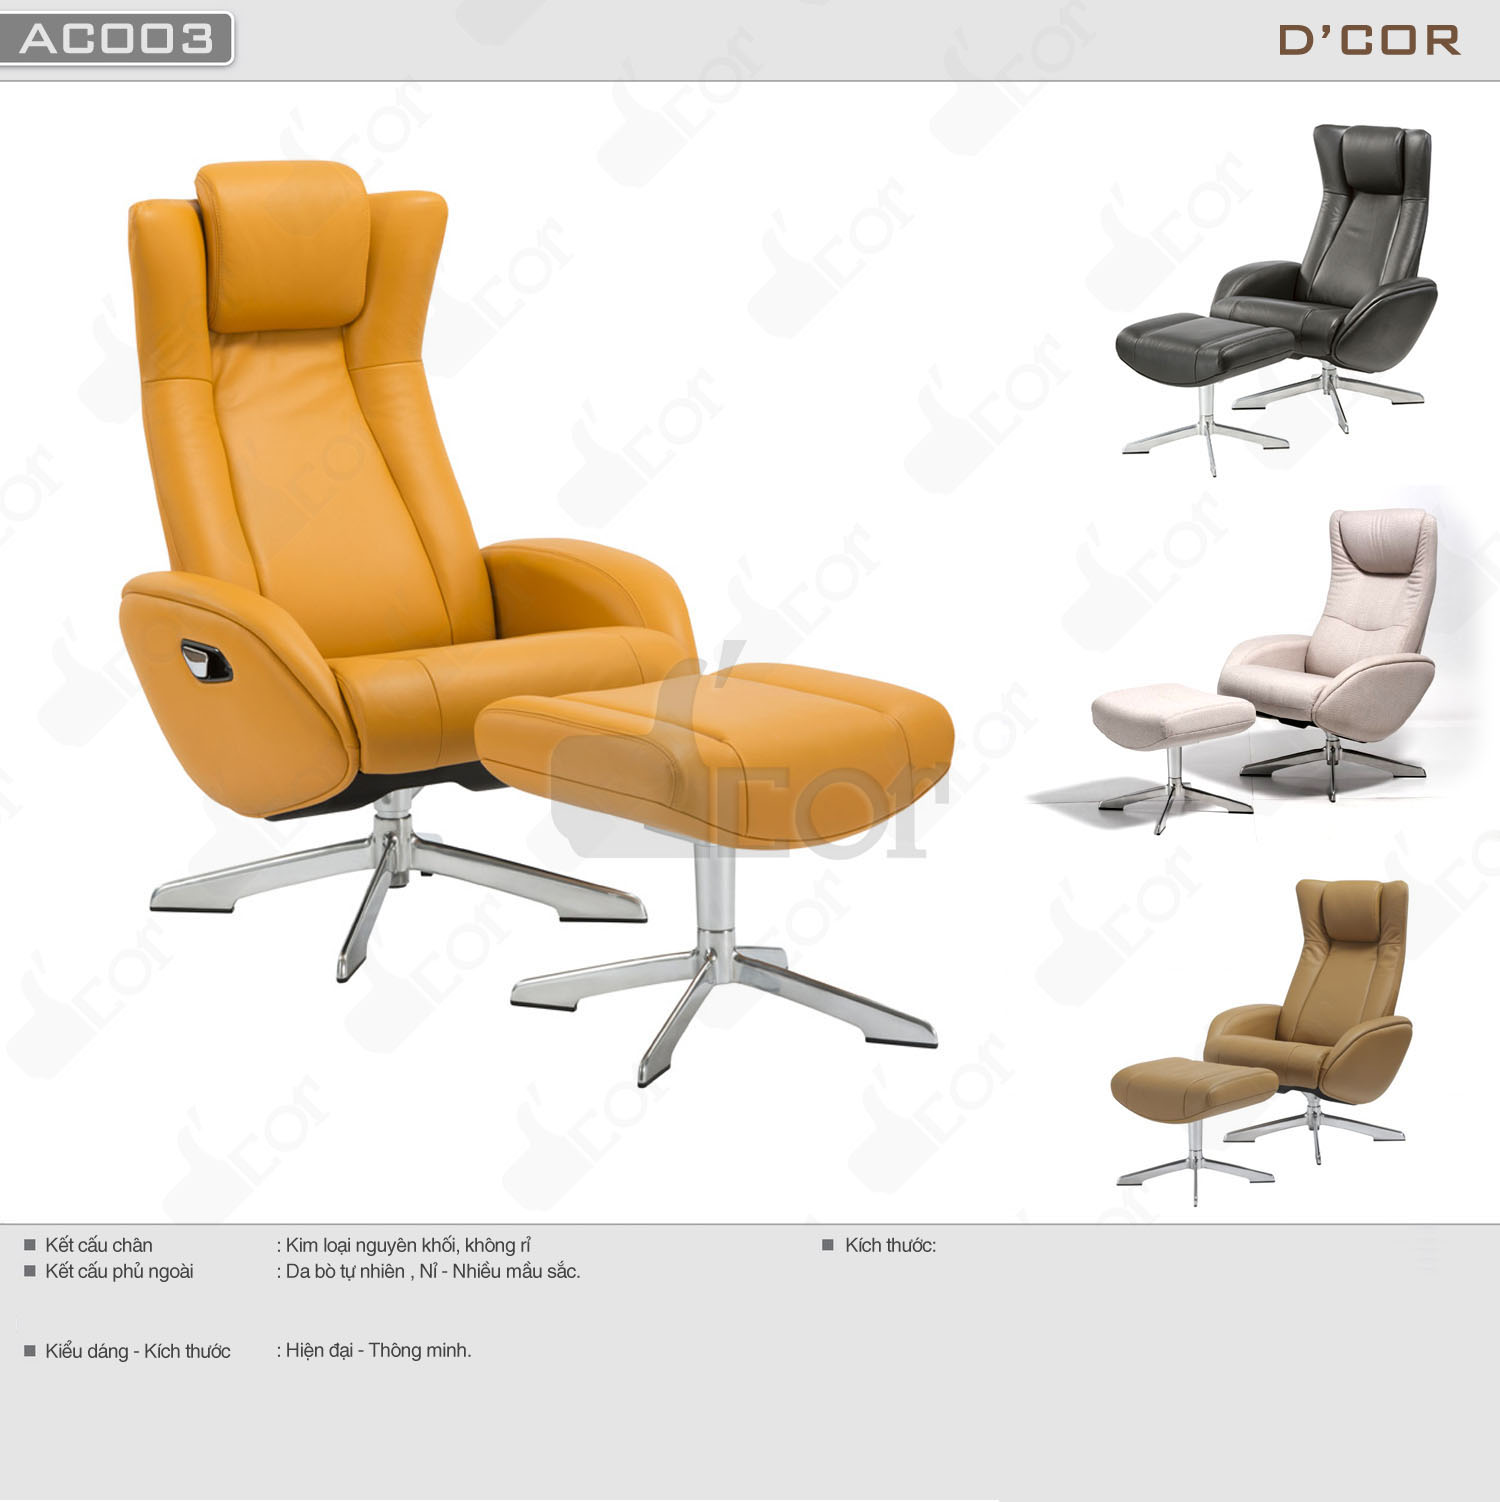 Ghế armchair thông minh cho nội thất nhà đẹp hiện đại: AC003